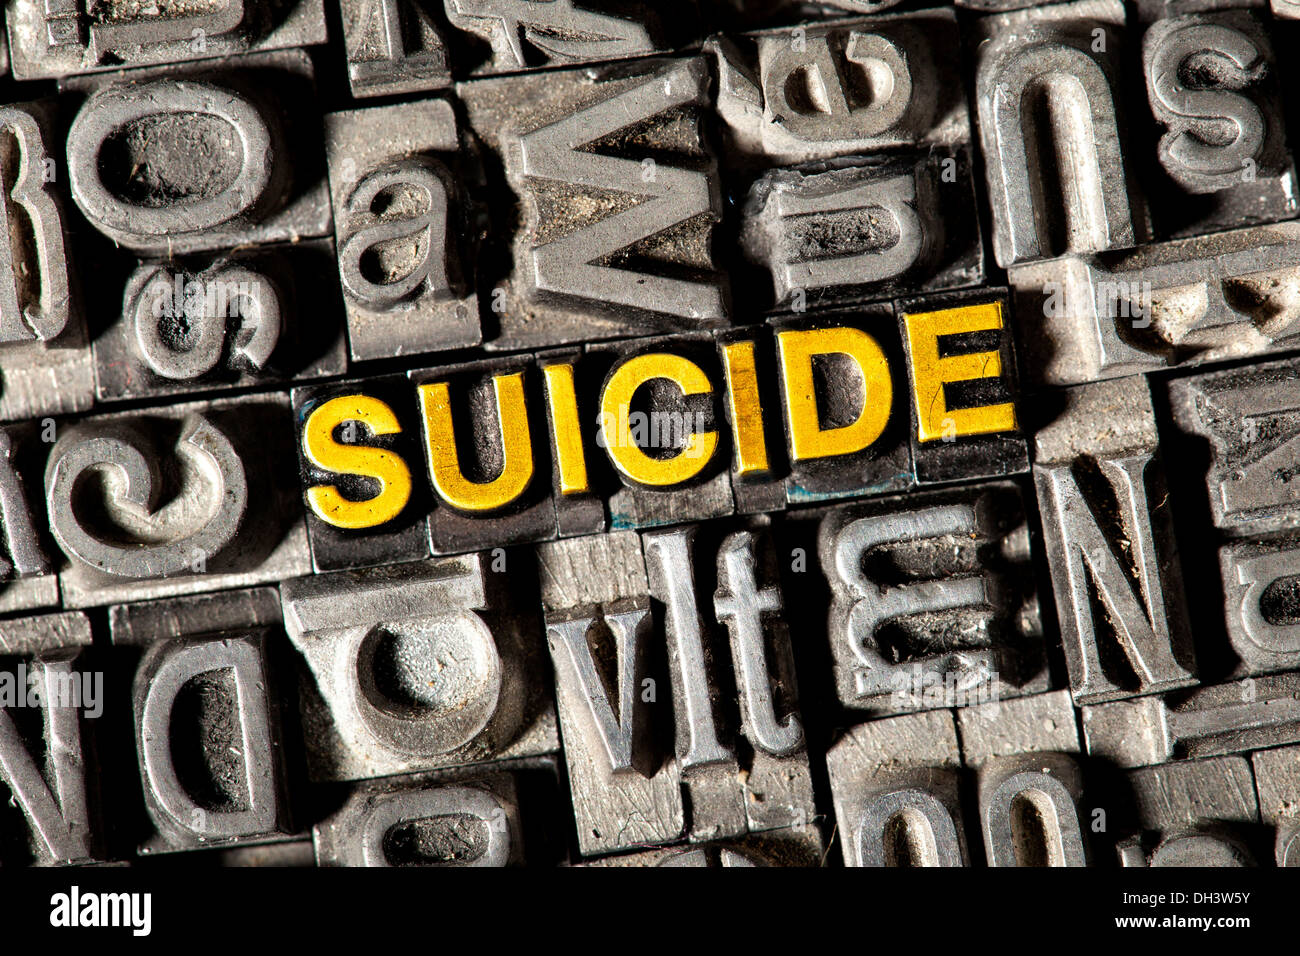 Vecchio portano lettere che compongono la parola "suicide" Foto Stock